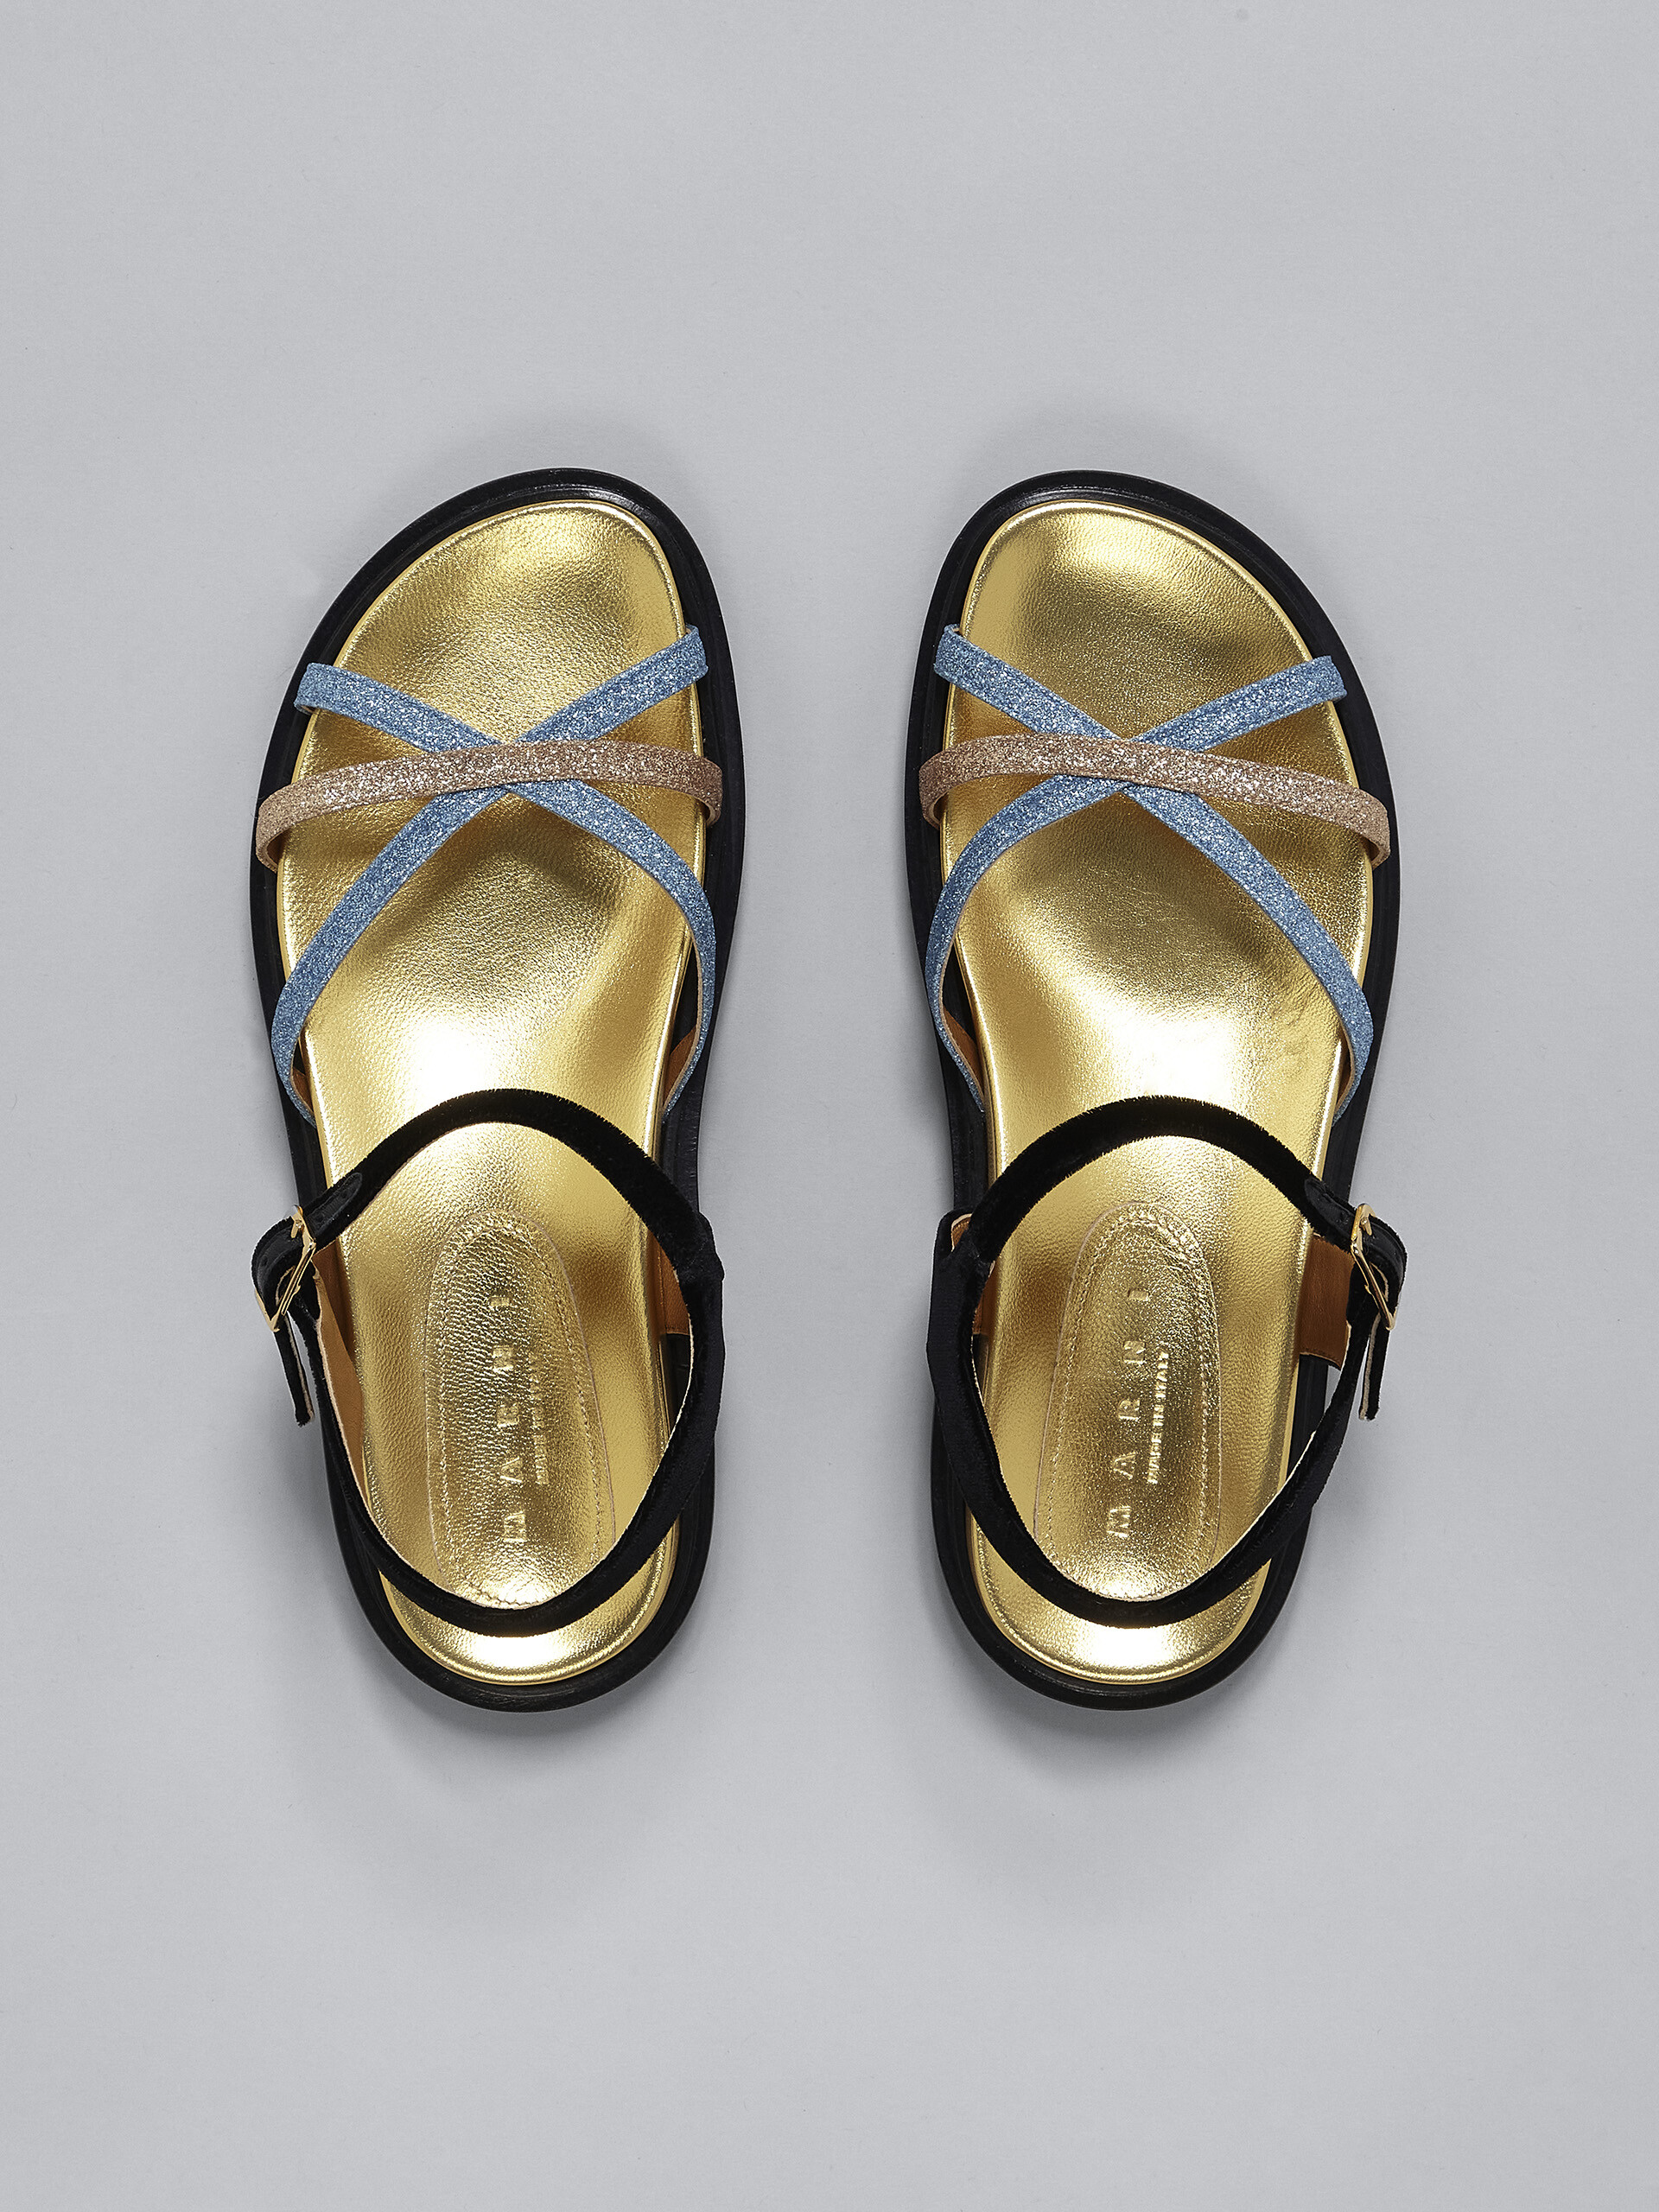 Sandalo Fussbett in tessuto glitter e velluto - Sandali - Image 4